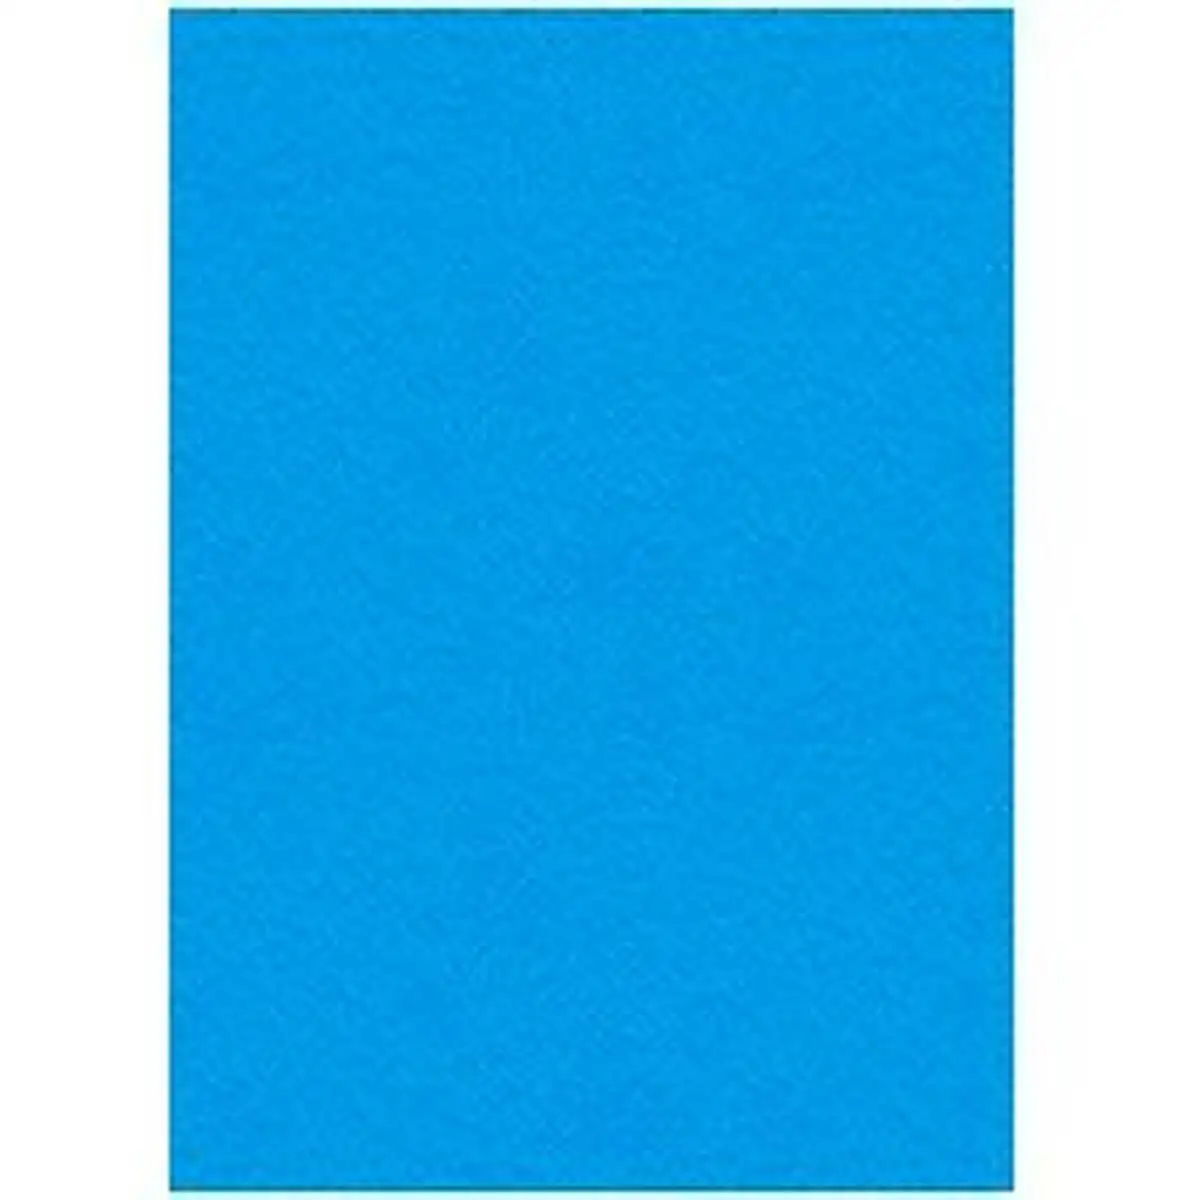 Couverture displast bleu ciel a4 carton 50 unites _9489. DIAYTAR SENEGAL - L'Art de Vivre en Couleurs. Découvrez notre boutique en ligne et trouvez des produits qui ajoutent une palette vibrante à votre quotidien.